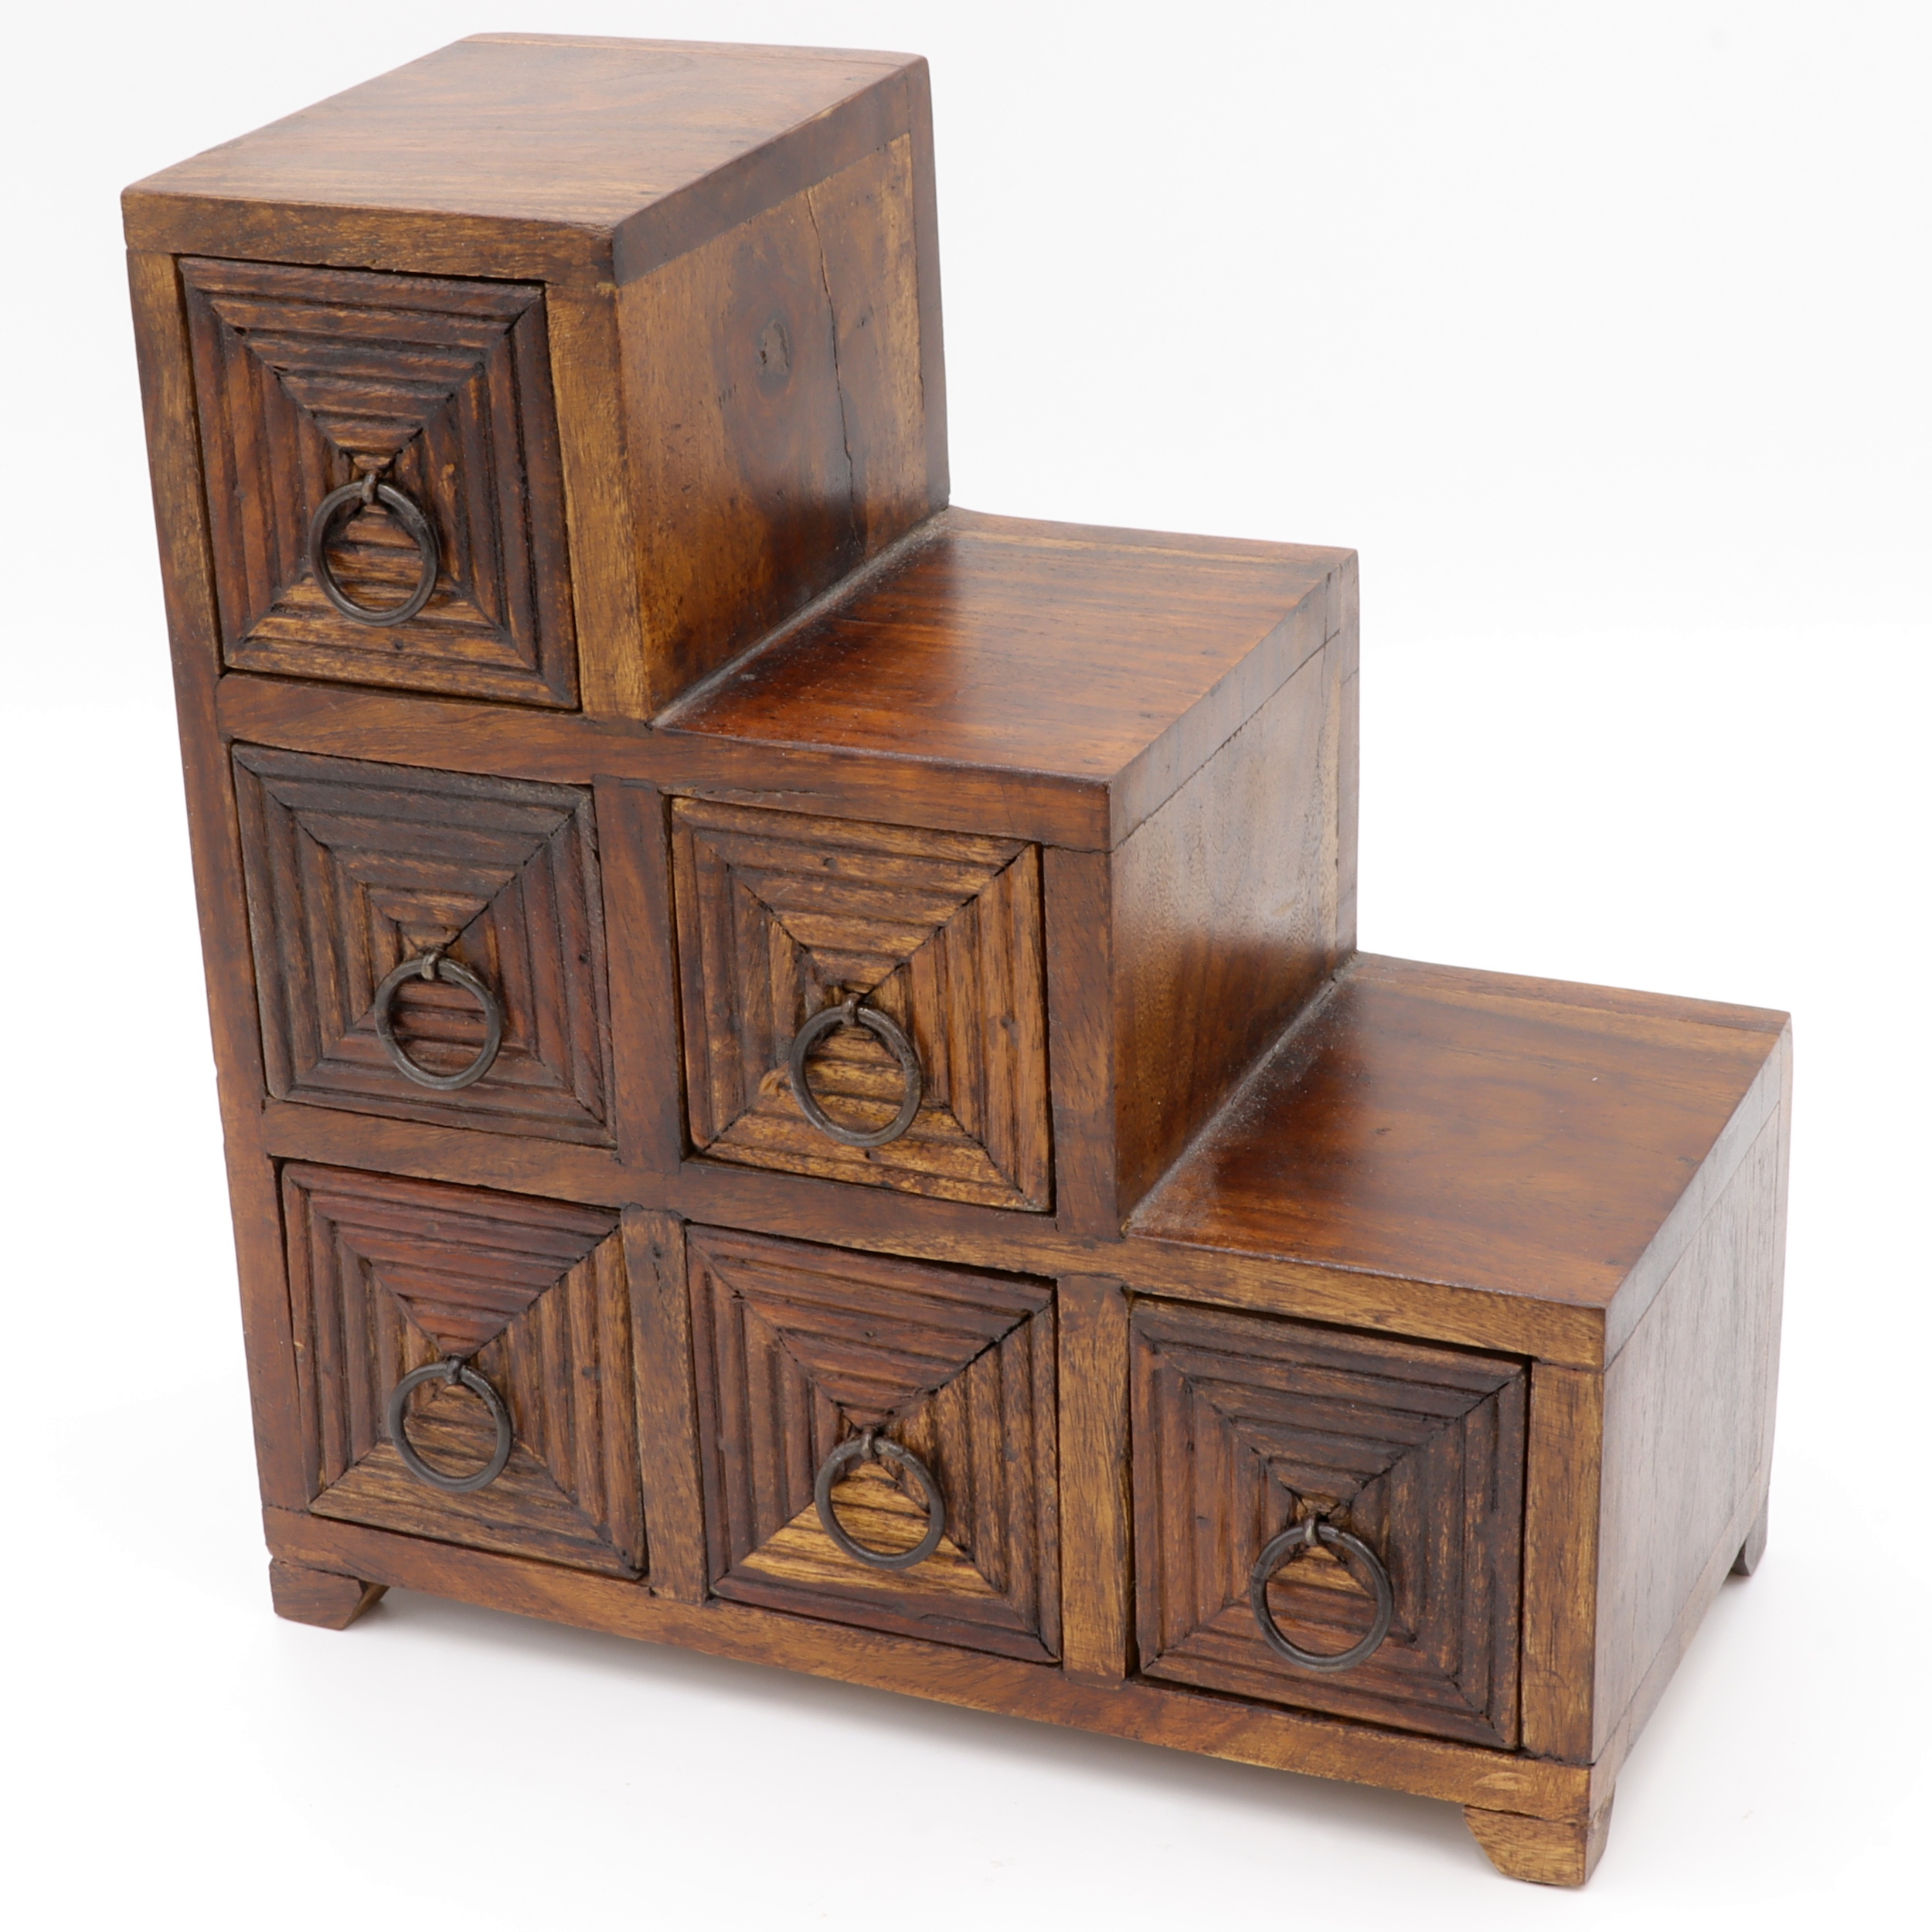 Schubladenschrank aus Holz - Sechs Schubladen verziert mit quadratischen Linien - Treppenstufen Design - praktisch und dekorativ